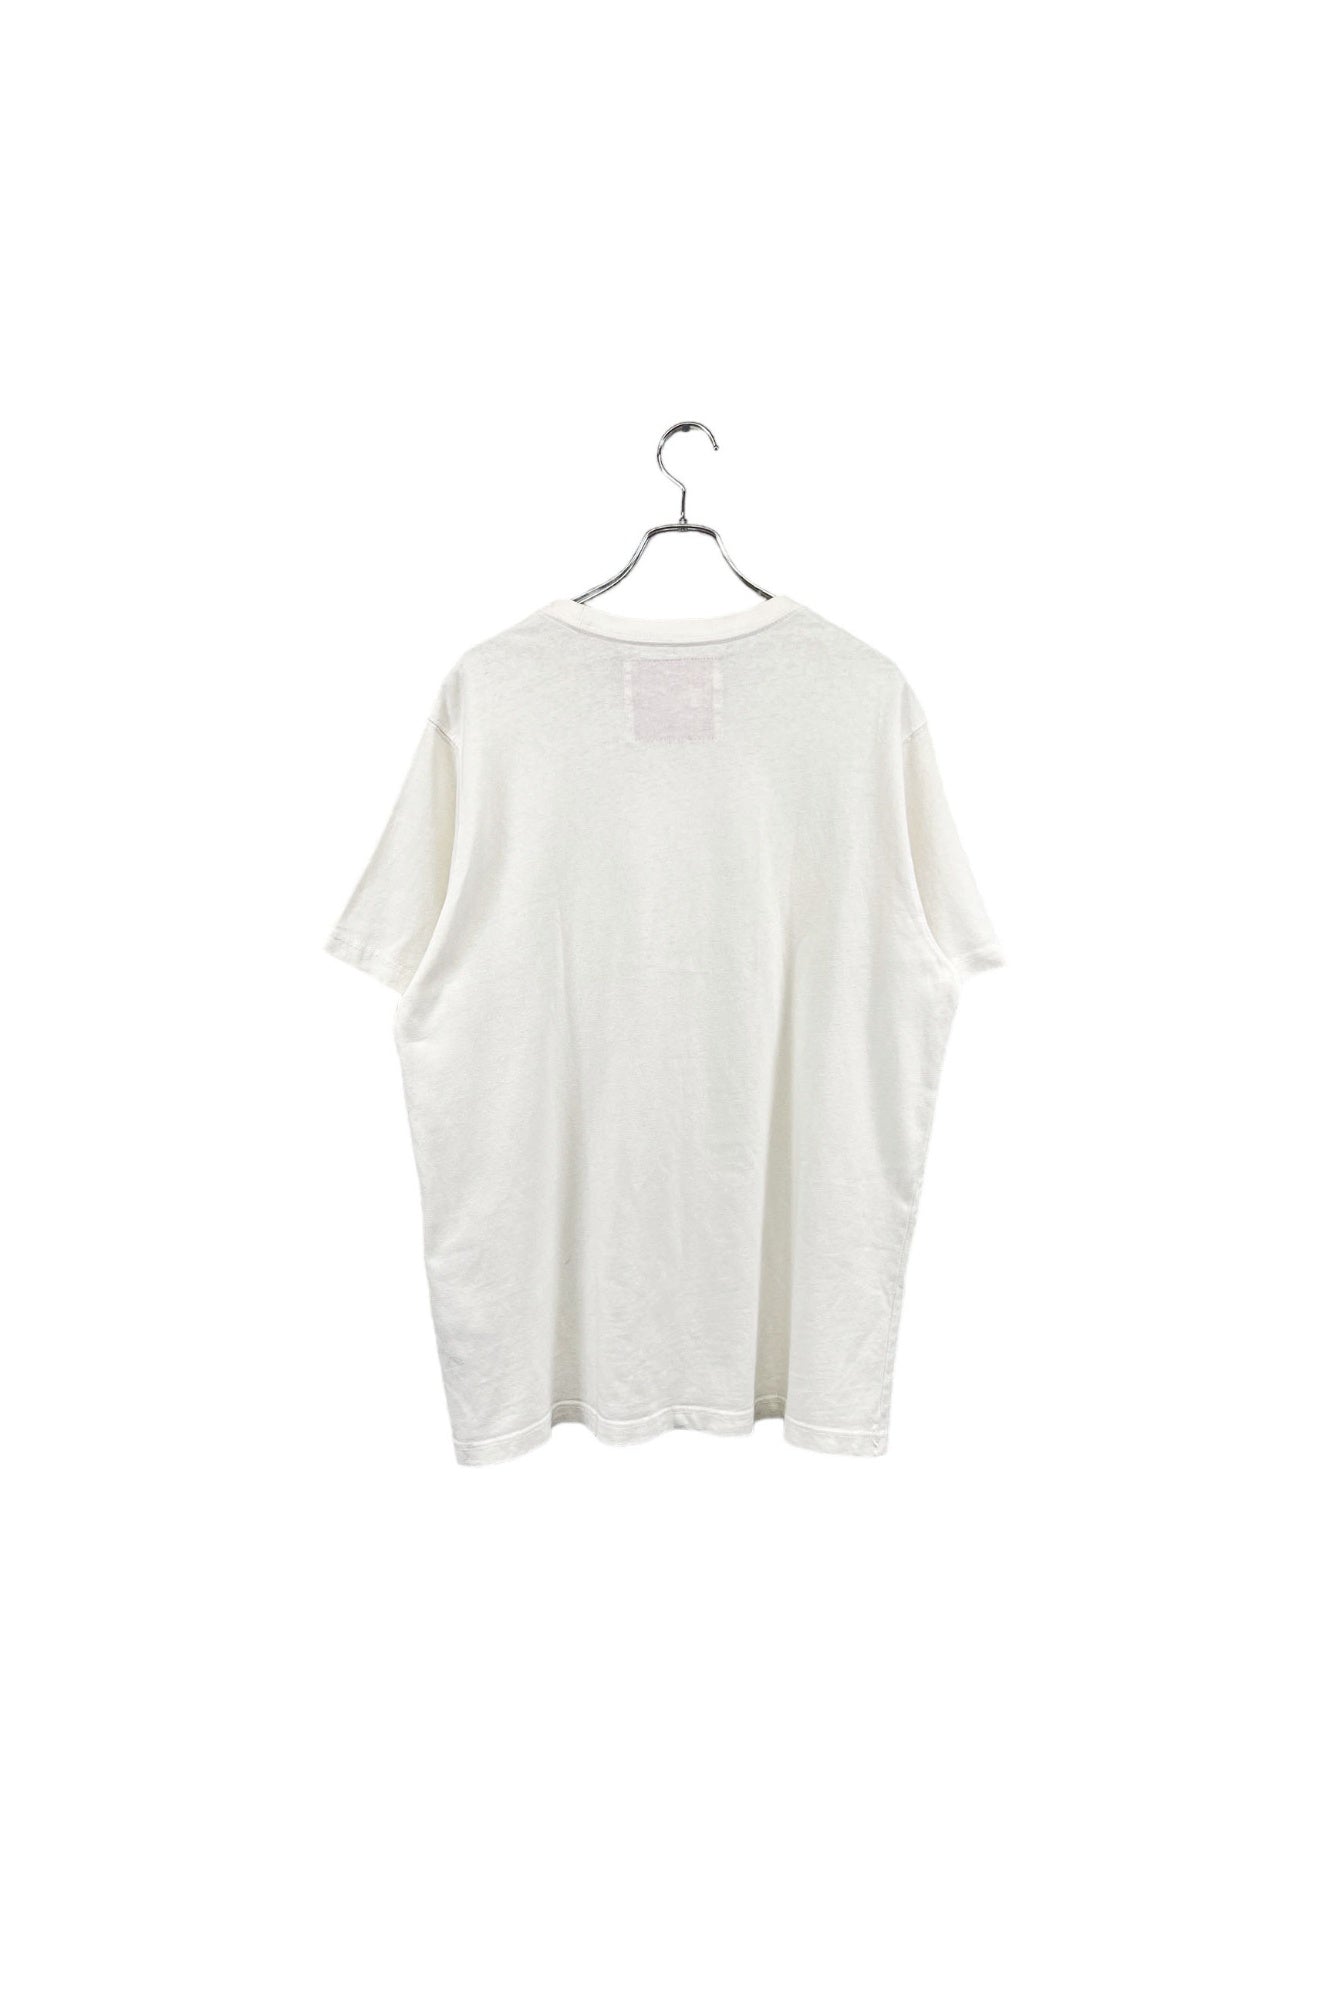 Levi's white T-shirt